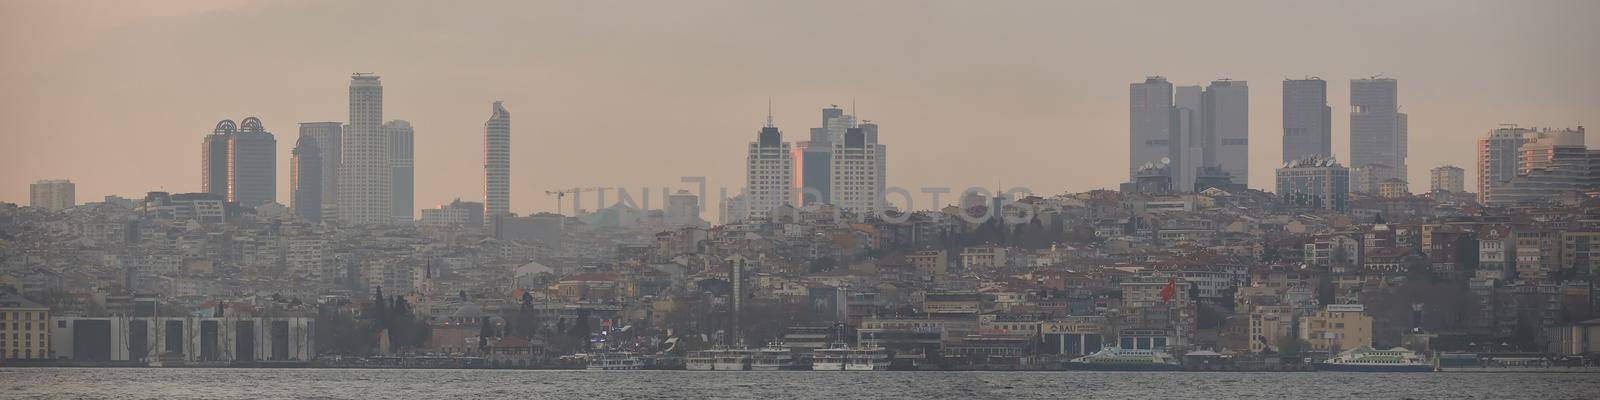 Besiktas coastline, the European side of Istanbul